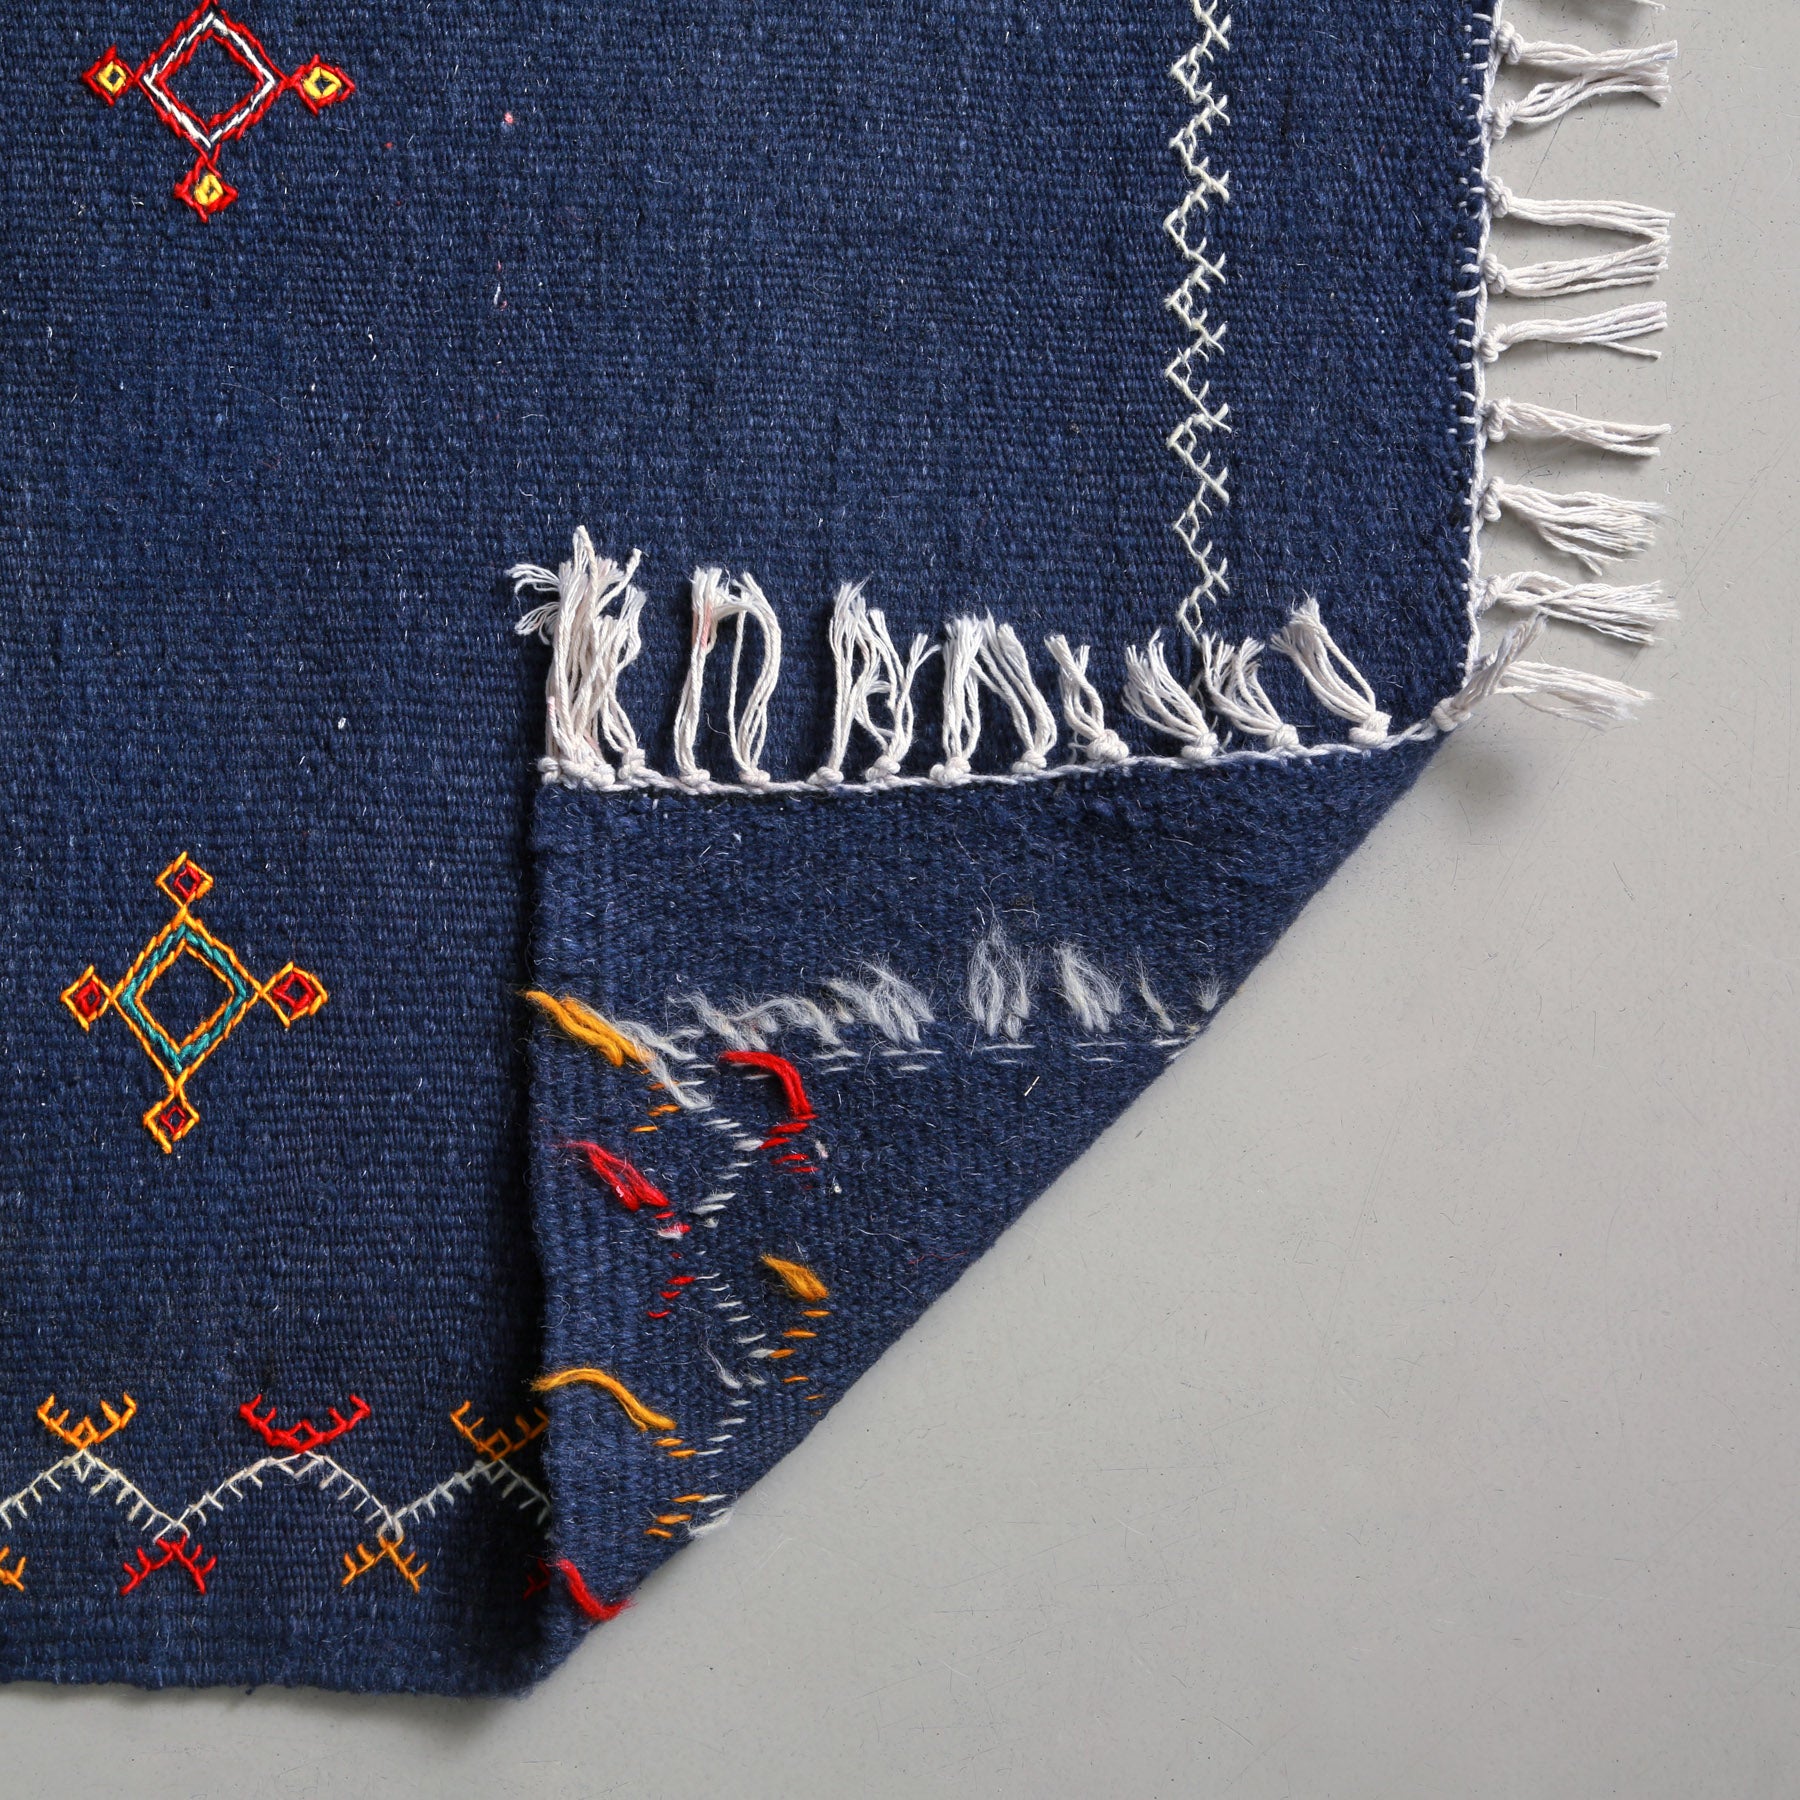 dettaglio del retro di un tappeto artigianale marocchino a tessitura piatta blu